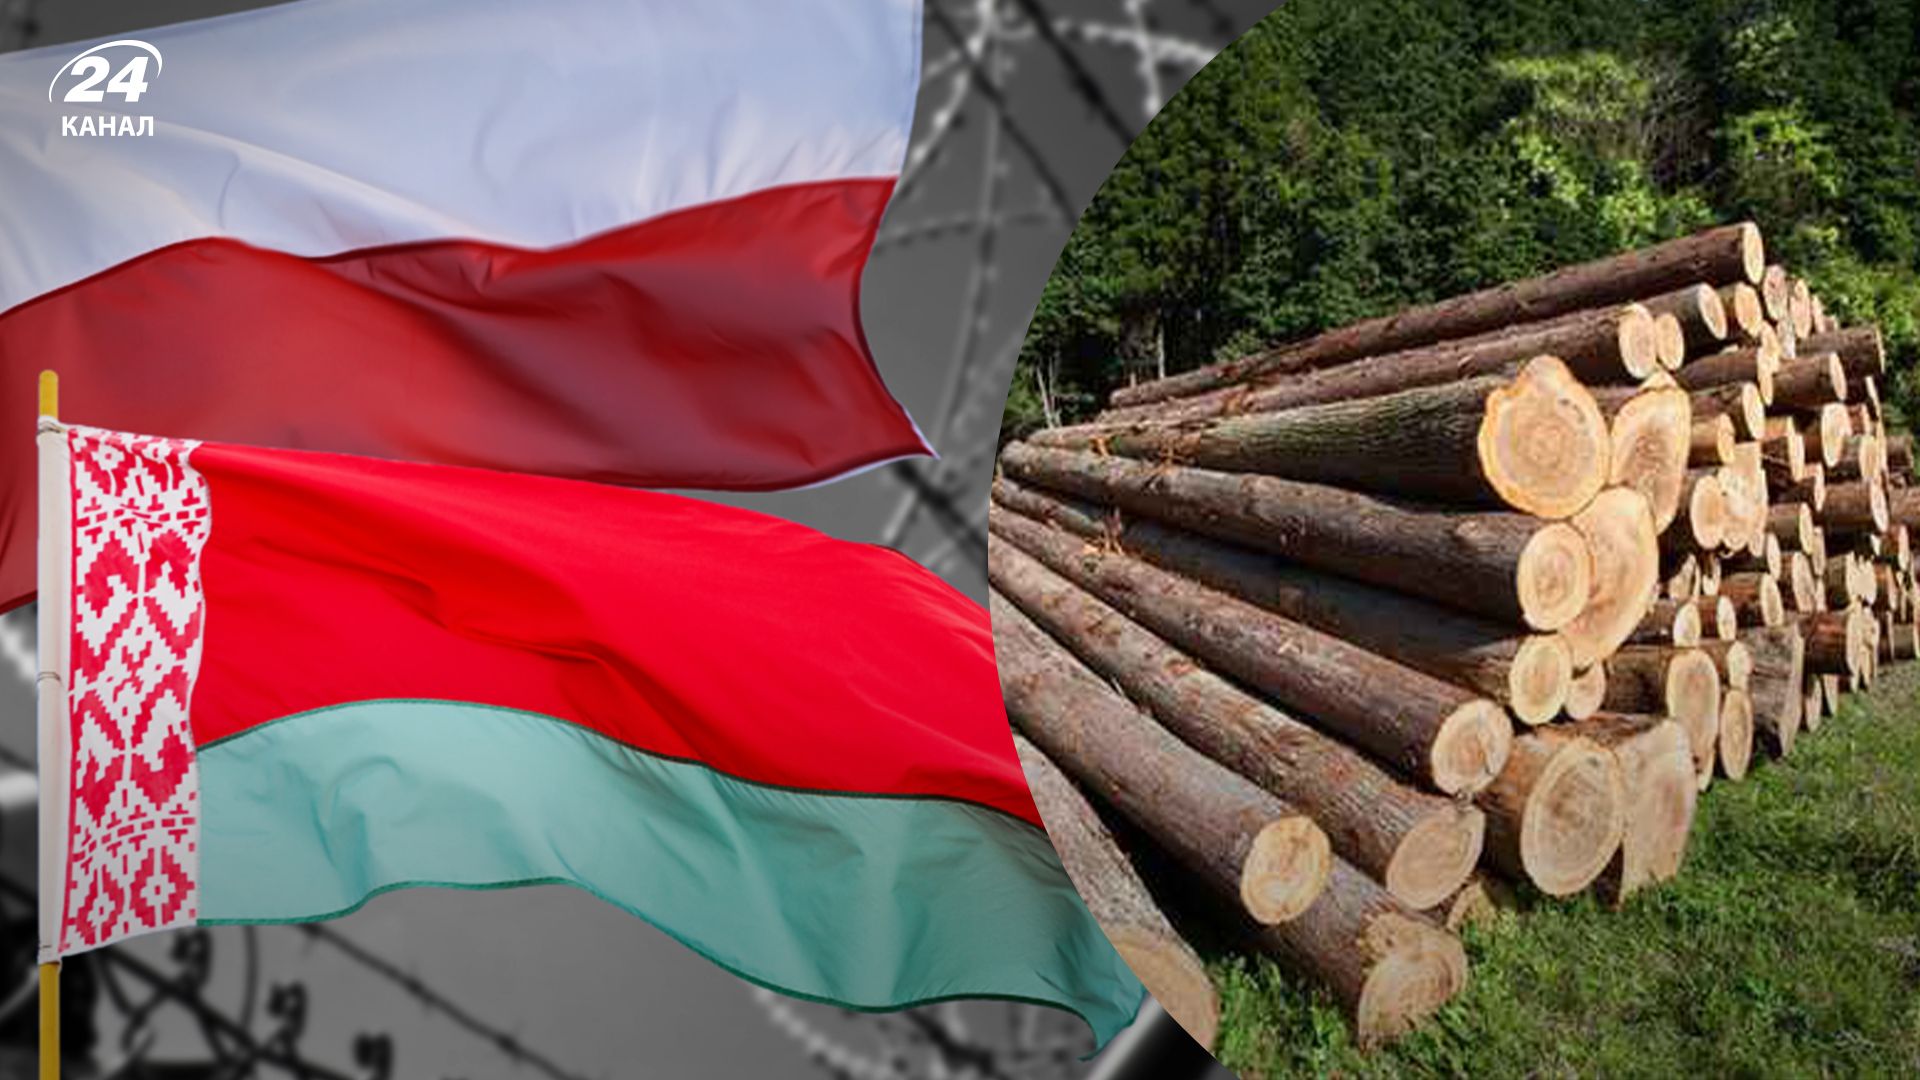 Подсанкционная белорусская древесина попадает в ЕС через Польшу